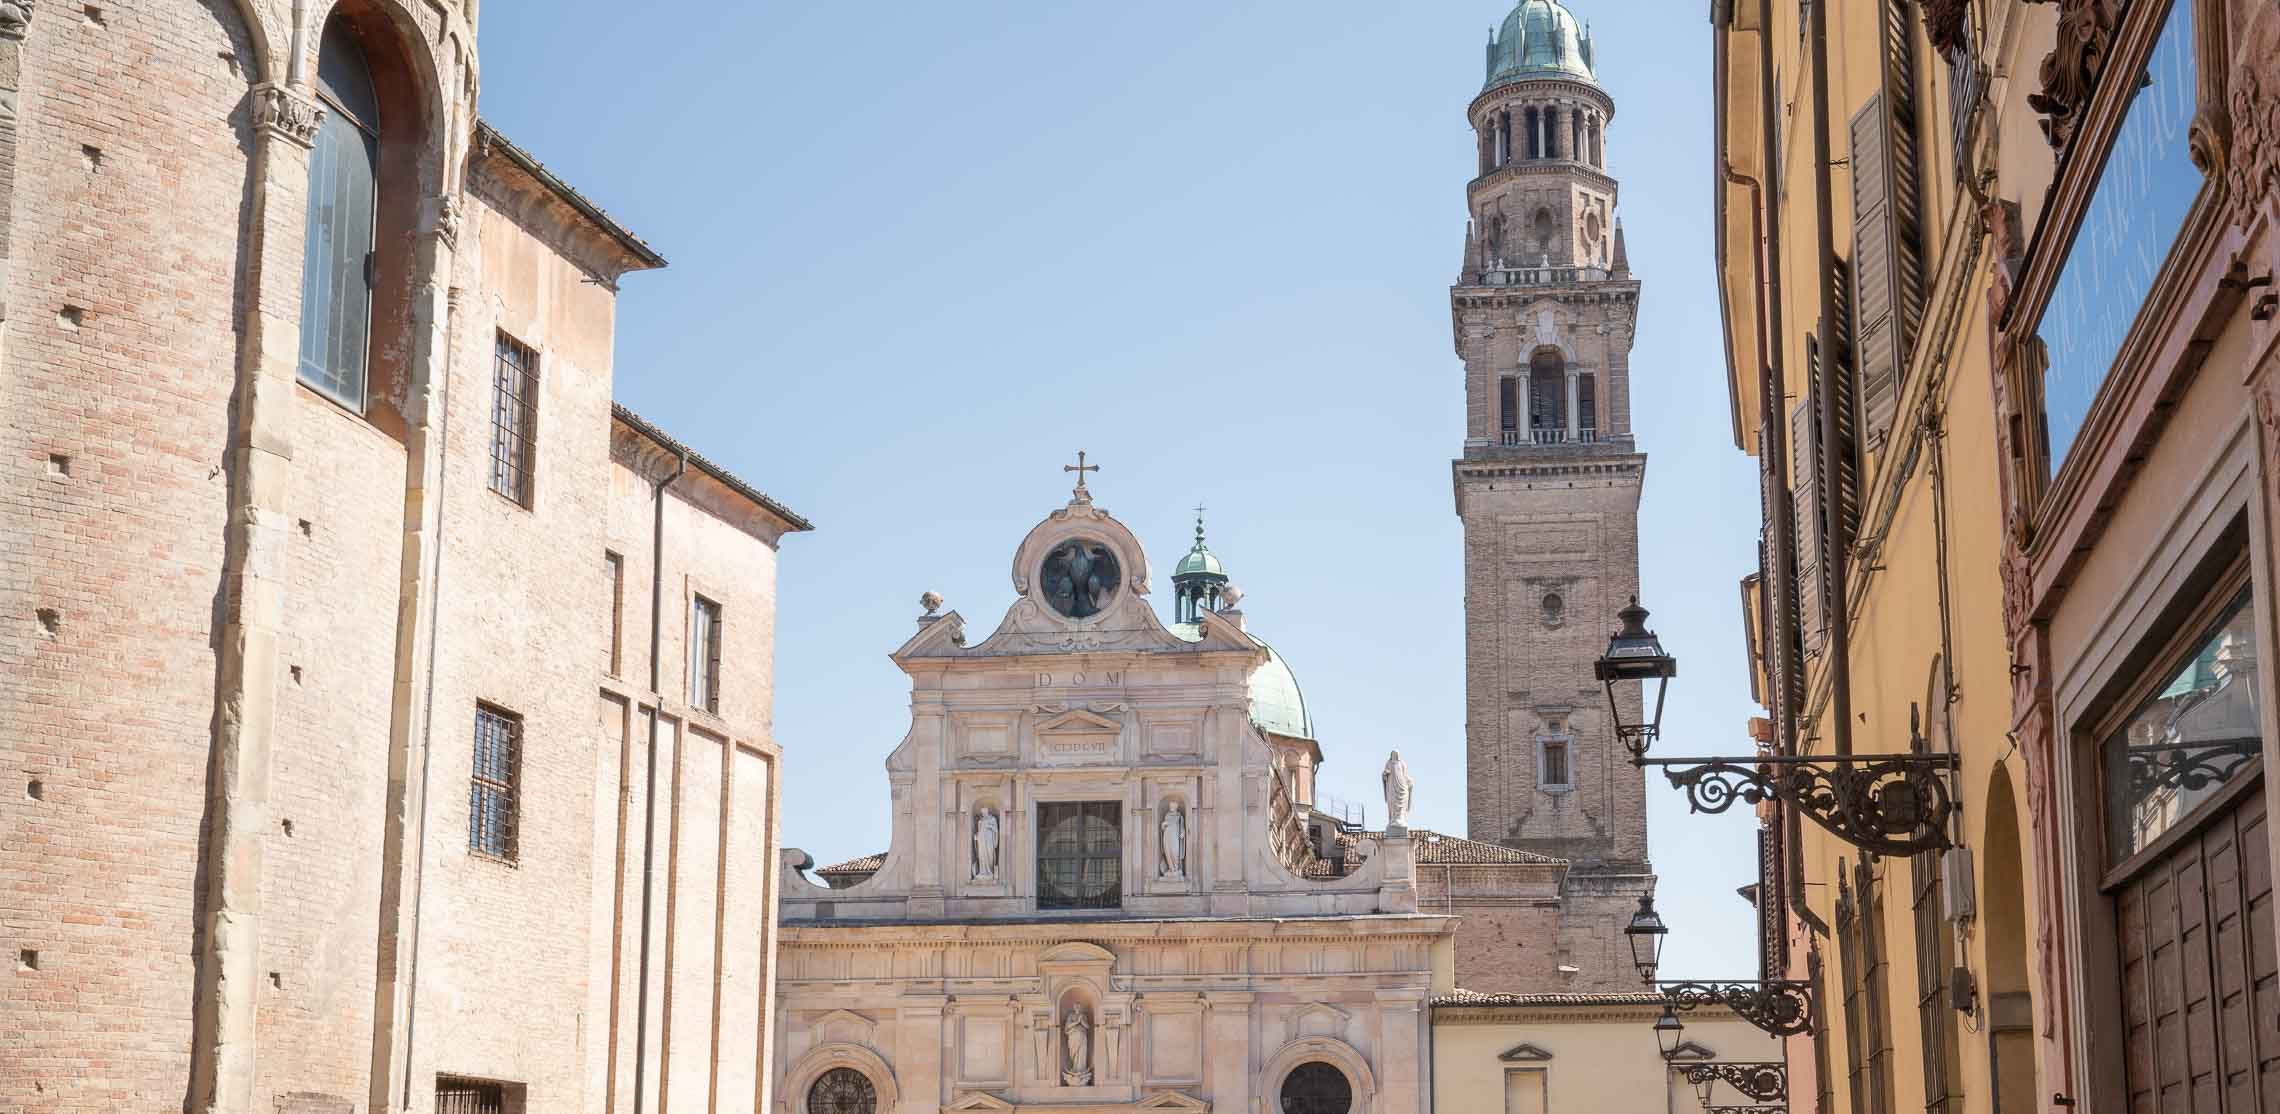 Eine barocke Kirche in der Altstadt von Parma.